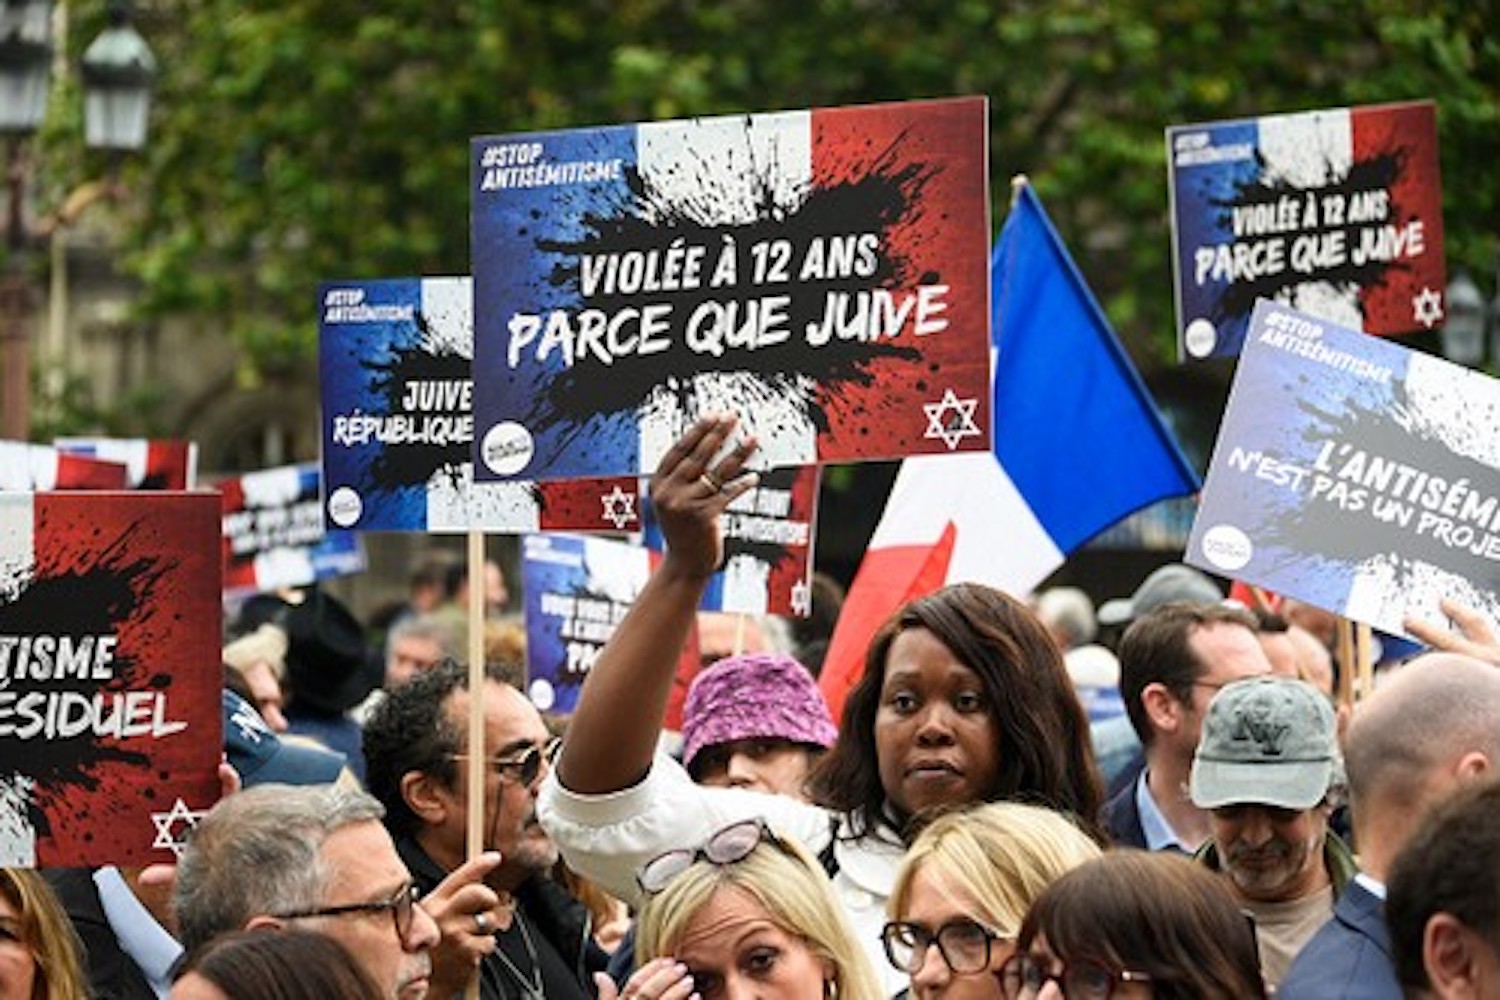 Des manifestants tiennent des pancartes sur lesquelles on peut lire "Violée parce que juive" lors d'un rassemblement pour condamner le viol collectif antisémite d'une jeune fille de 12 ans à Courbevoie, lors d'un rassemblement à Paris le 19 juin 2024, suite à la mise en examen d'adolescents pour viol, menaces de mort, insultes antisémites et violences à son encontre.